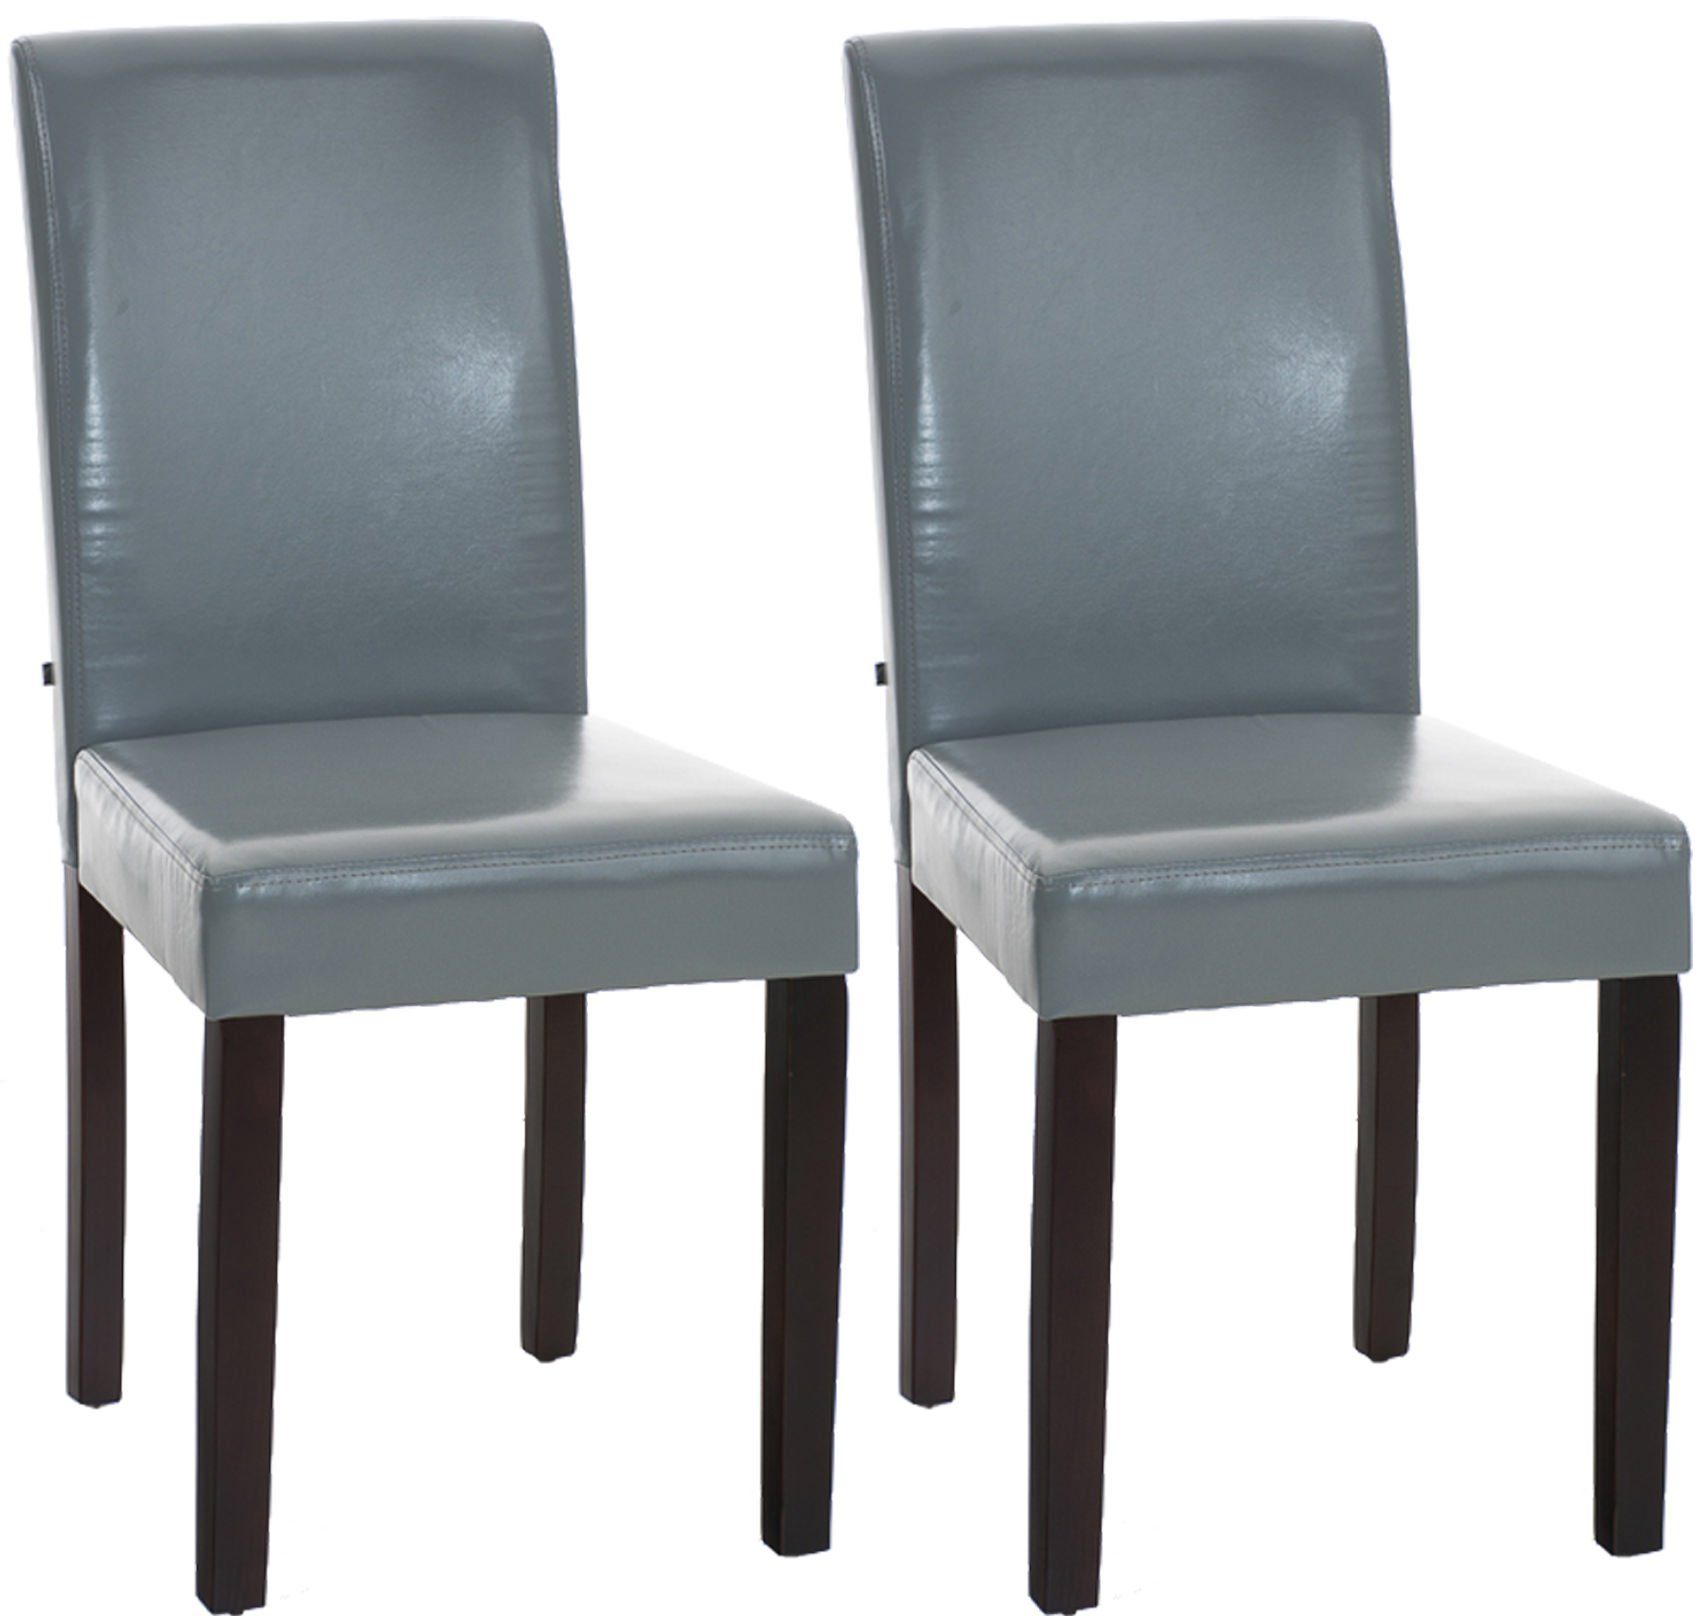 TPFLiving Esszimmerstuhl Ines mit hochwertig gepolsterter Sitzfläche - Konferenzstuhl (Küchenstuhl - Esstischstuhl - Wohnzimmerstuhl, 2 St), Gestell: Holz dunkelbraun - Sitzfläche: Kunstleder grau